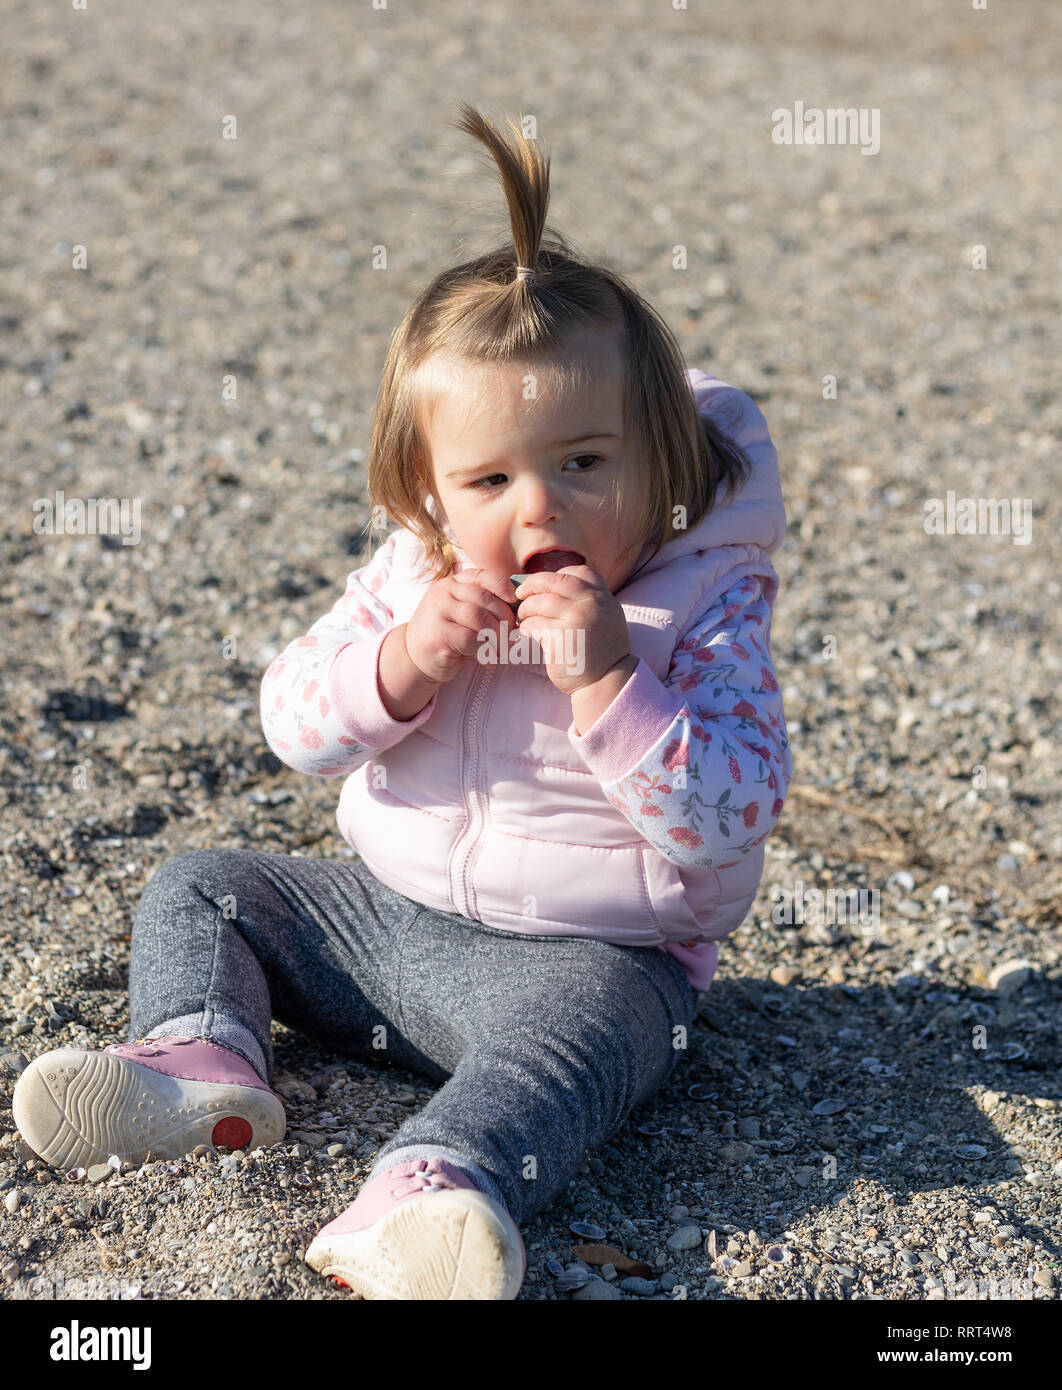 Schöne 16 Monate altes Baby Mädchen am Strand zu sitzen. Genfer See in der  Nähe der Stadt Lausanne. Schweiz Stockfotografie - Alamy